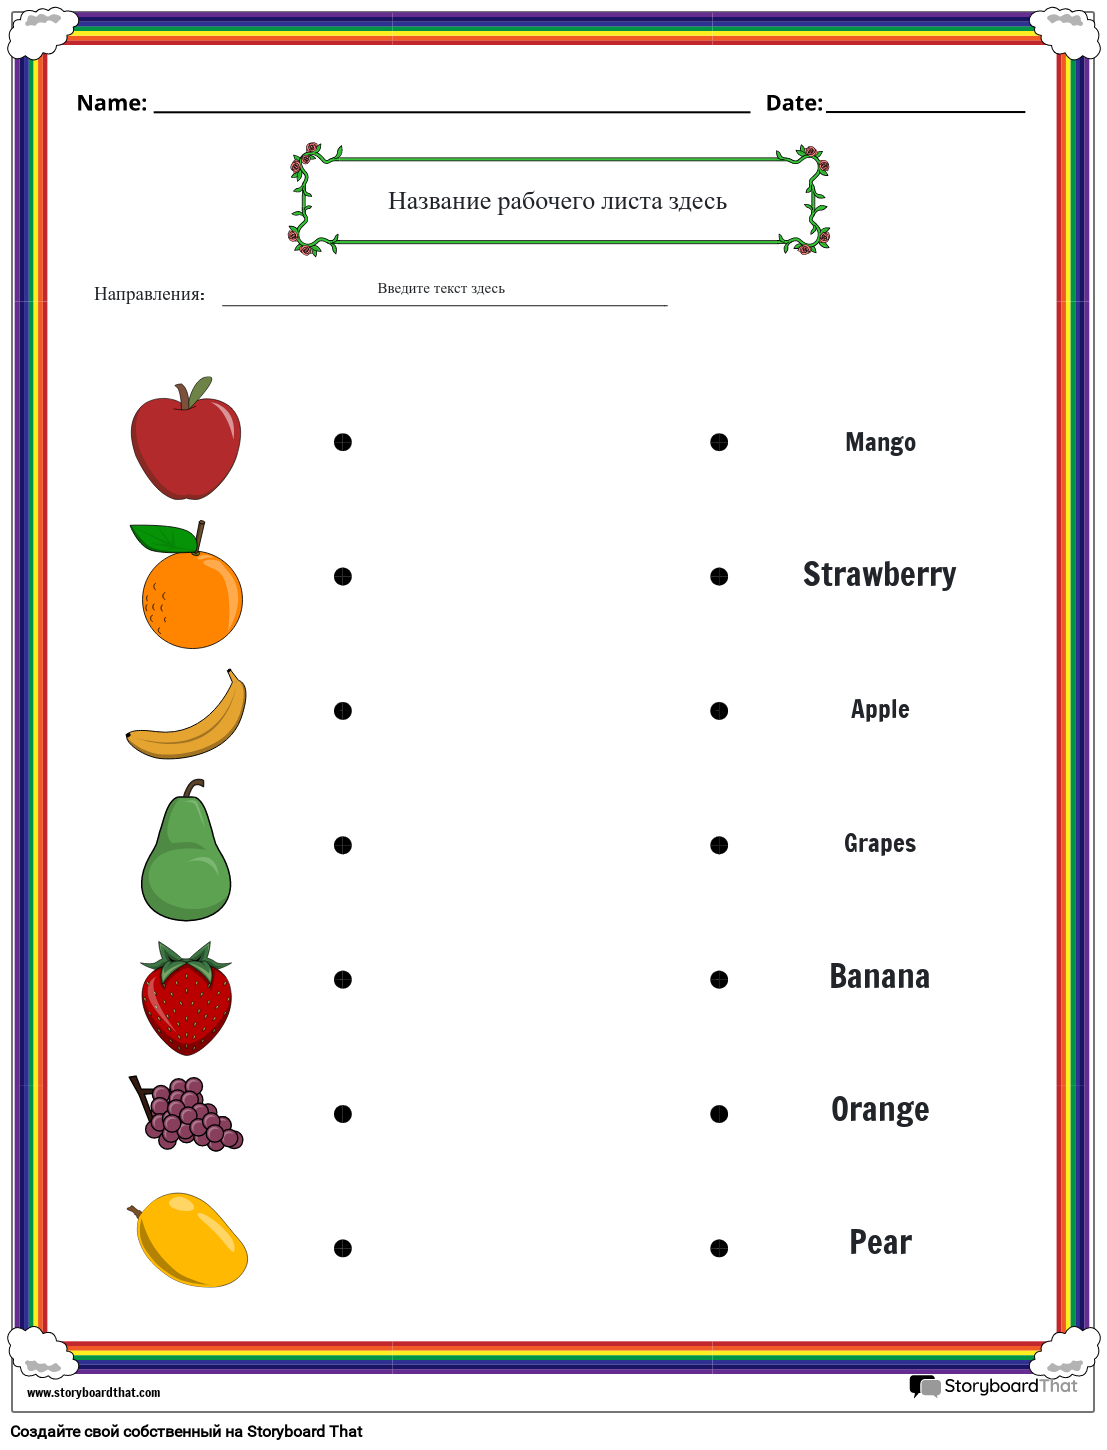 Таблица соответствия фруктов цветам названий